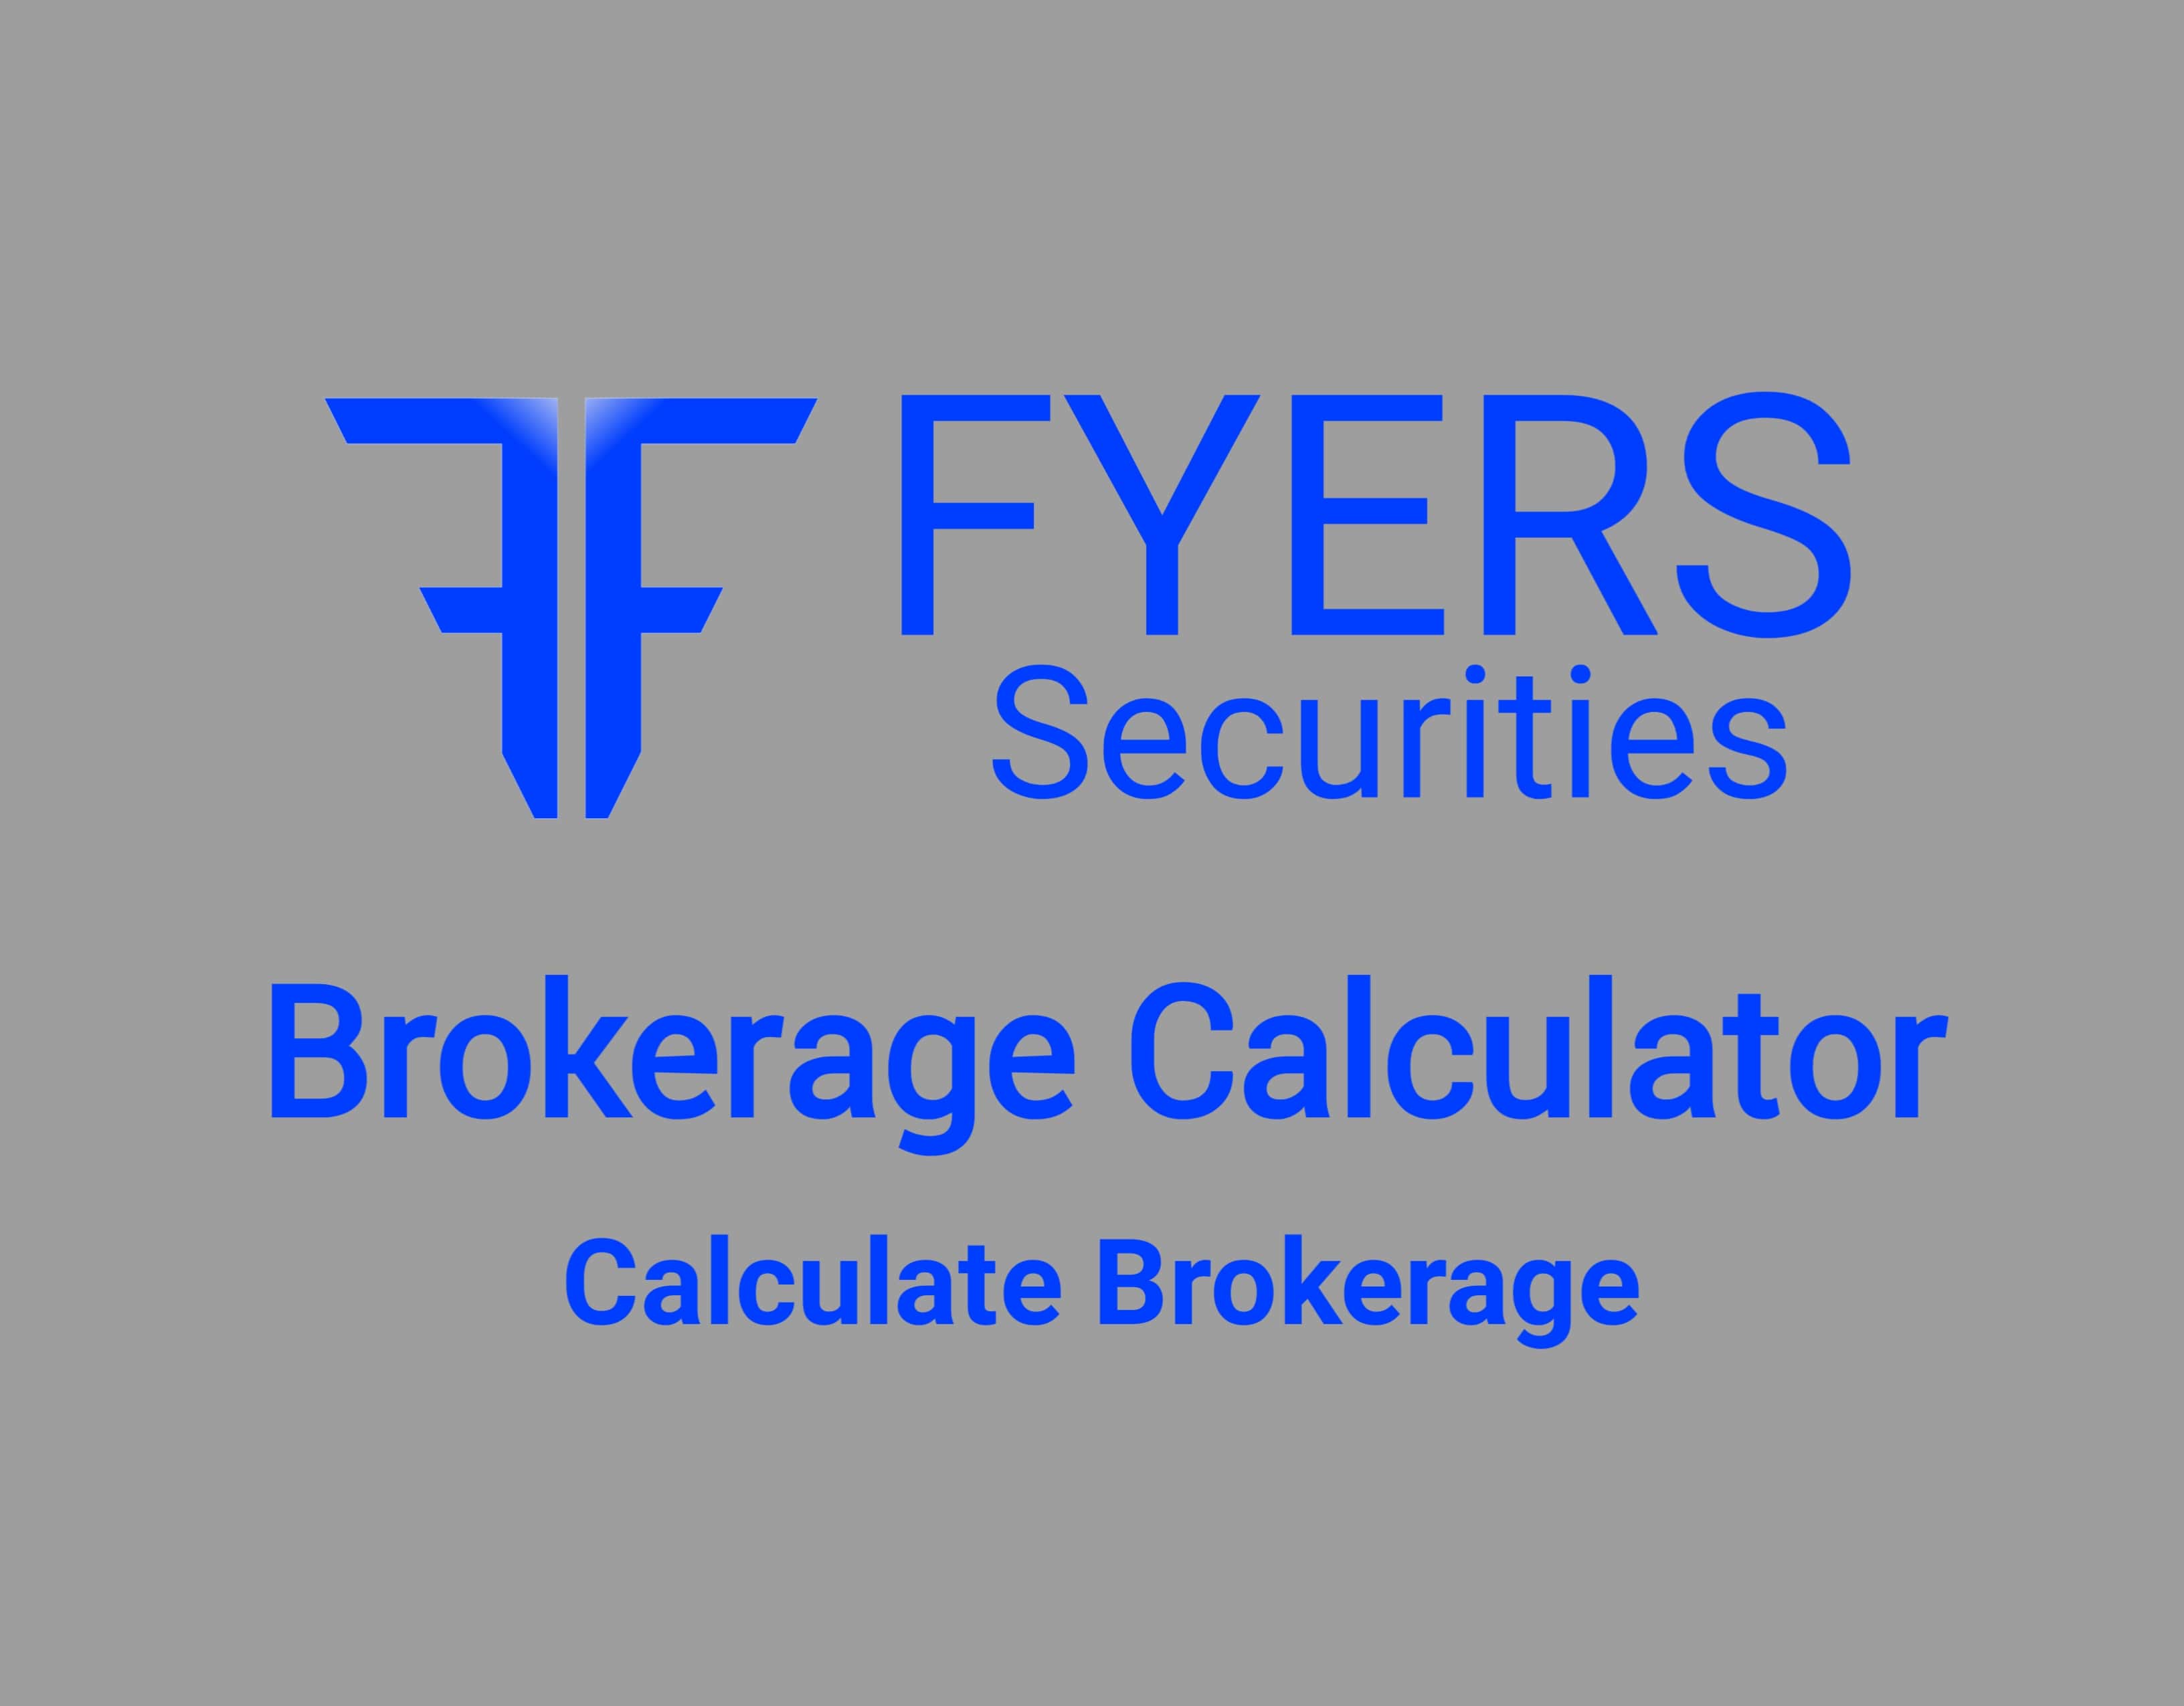 Fyers Brokerage Calculator